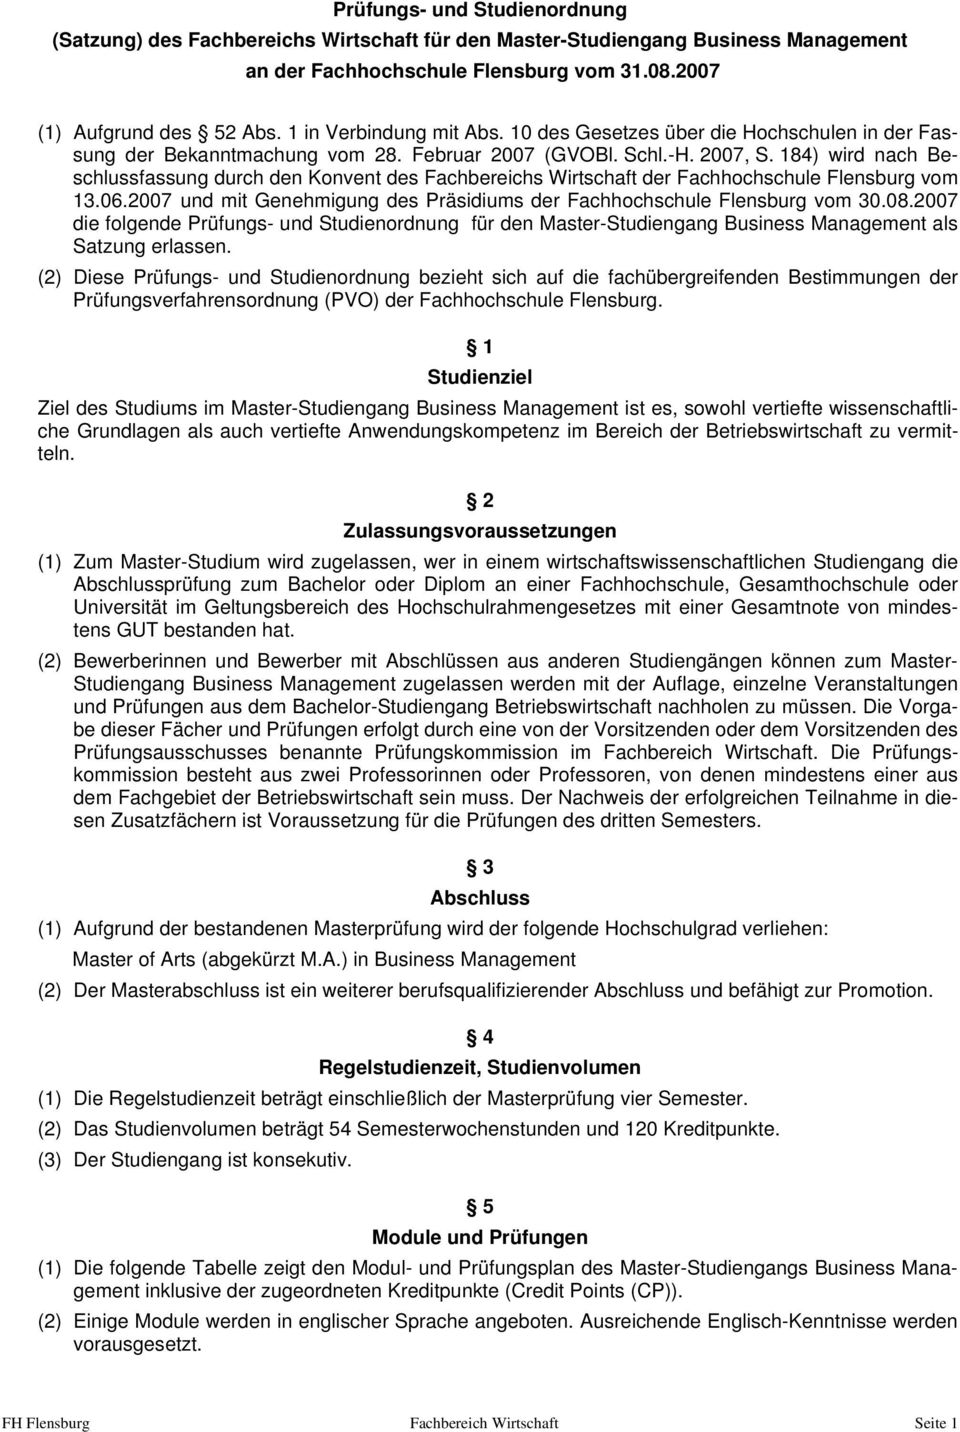 184) wird nach Beschlussfassung durch den Konvent des Fachbereichs Wirtschaft der Fachhochschule Flensburg vom 13.06.2007 und mit Genehmigung des Präsidiums der Fachhochschule Flensburg vom 30.08.